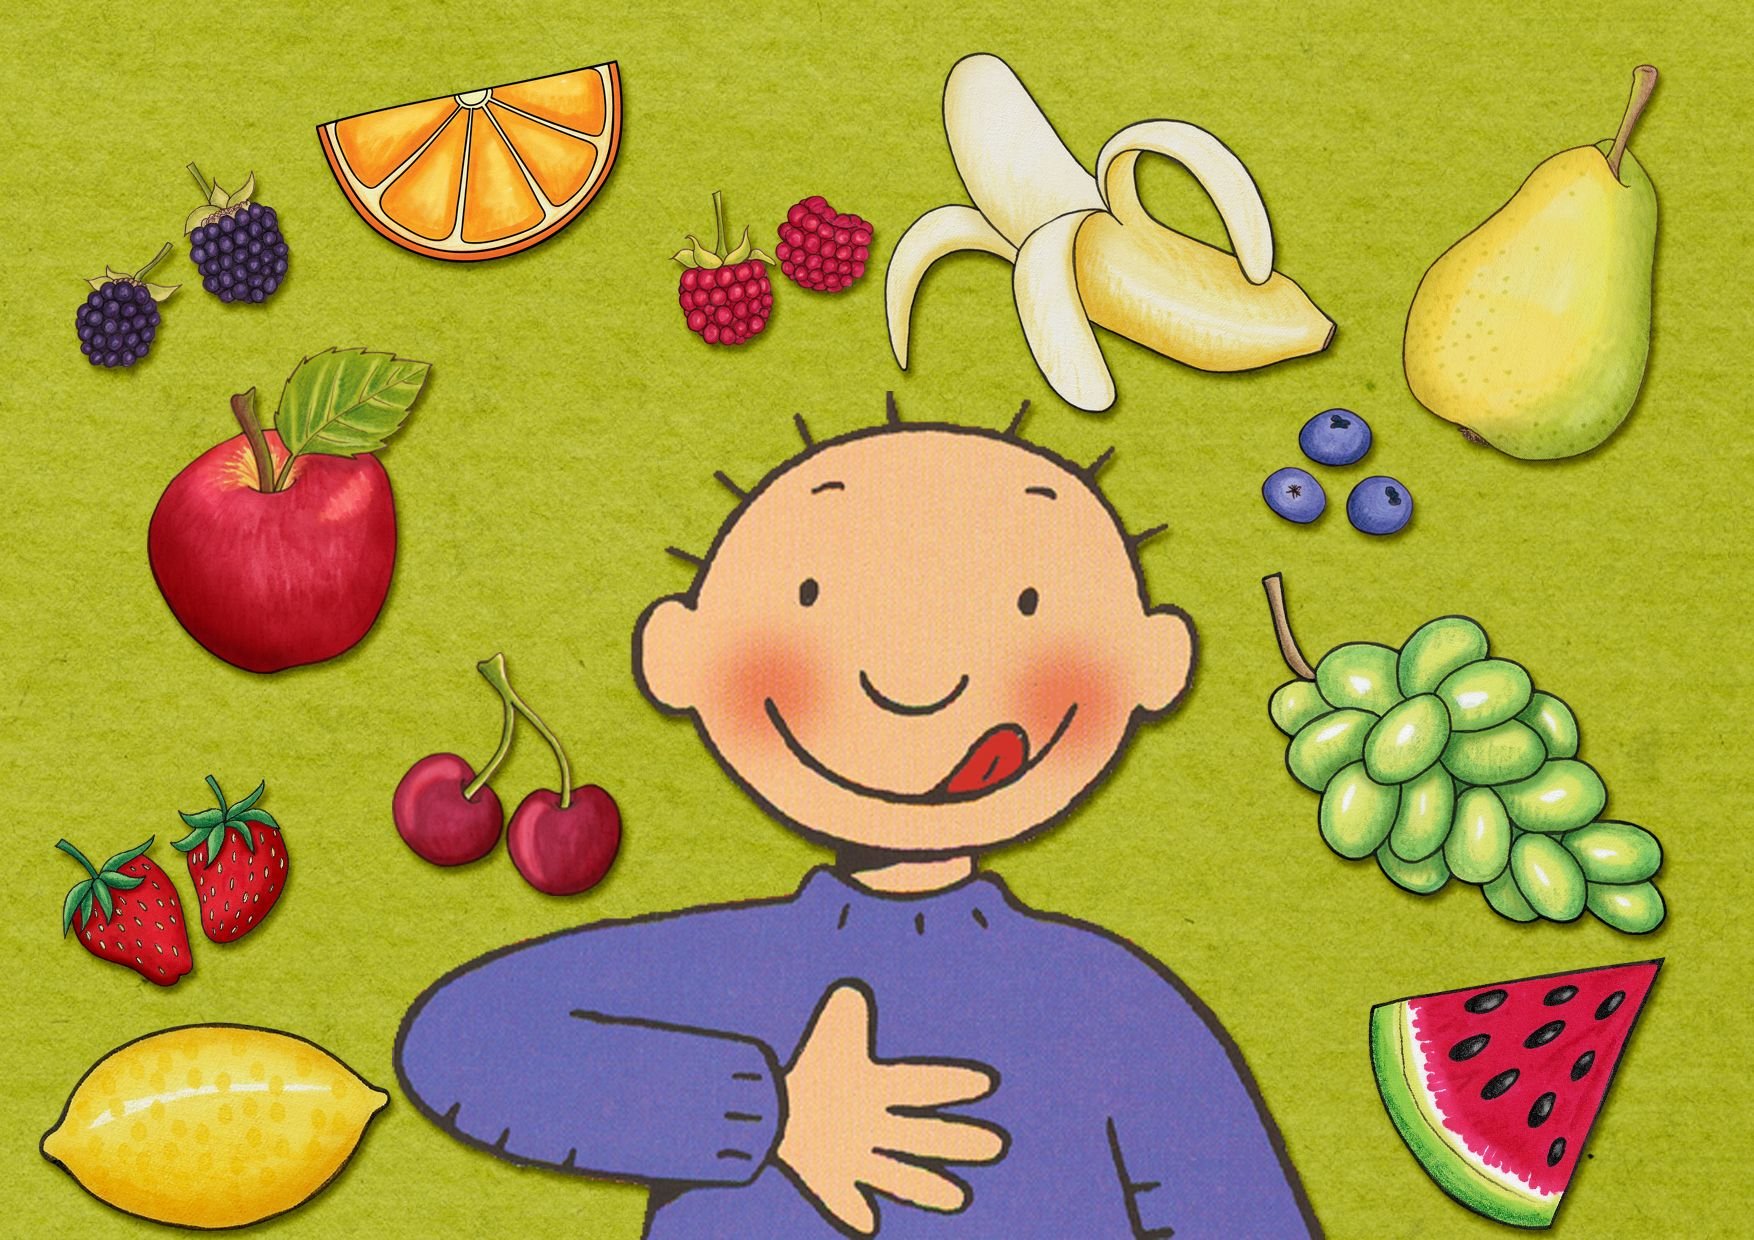 Здоровое питание картинки для детей